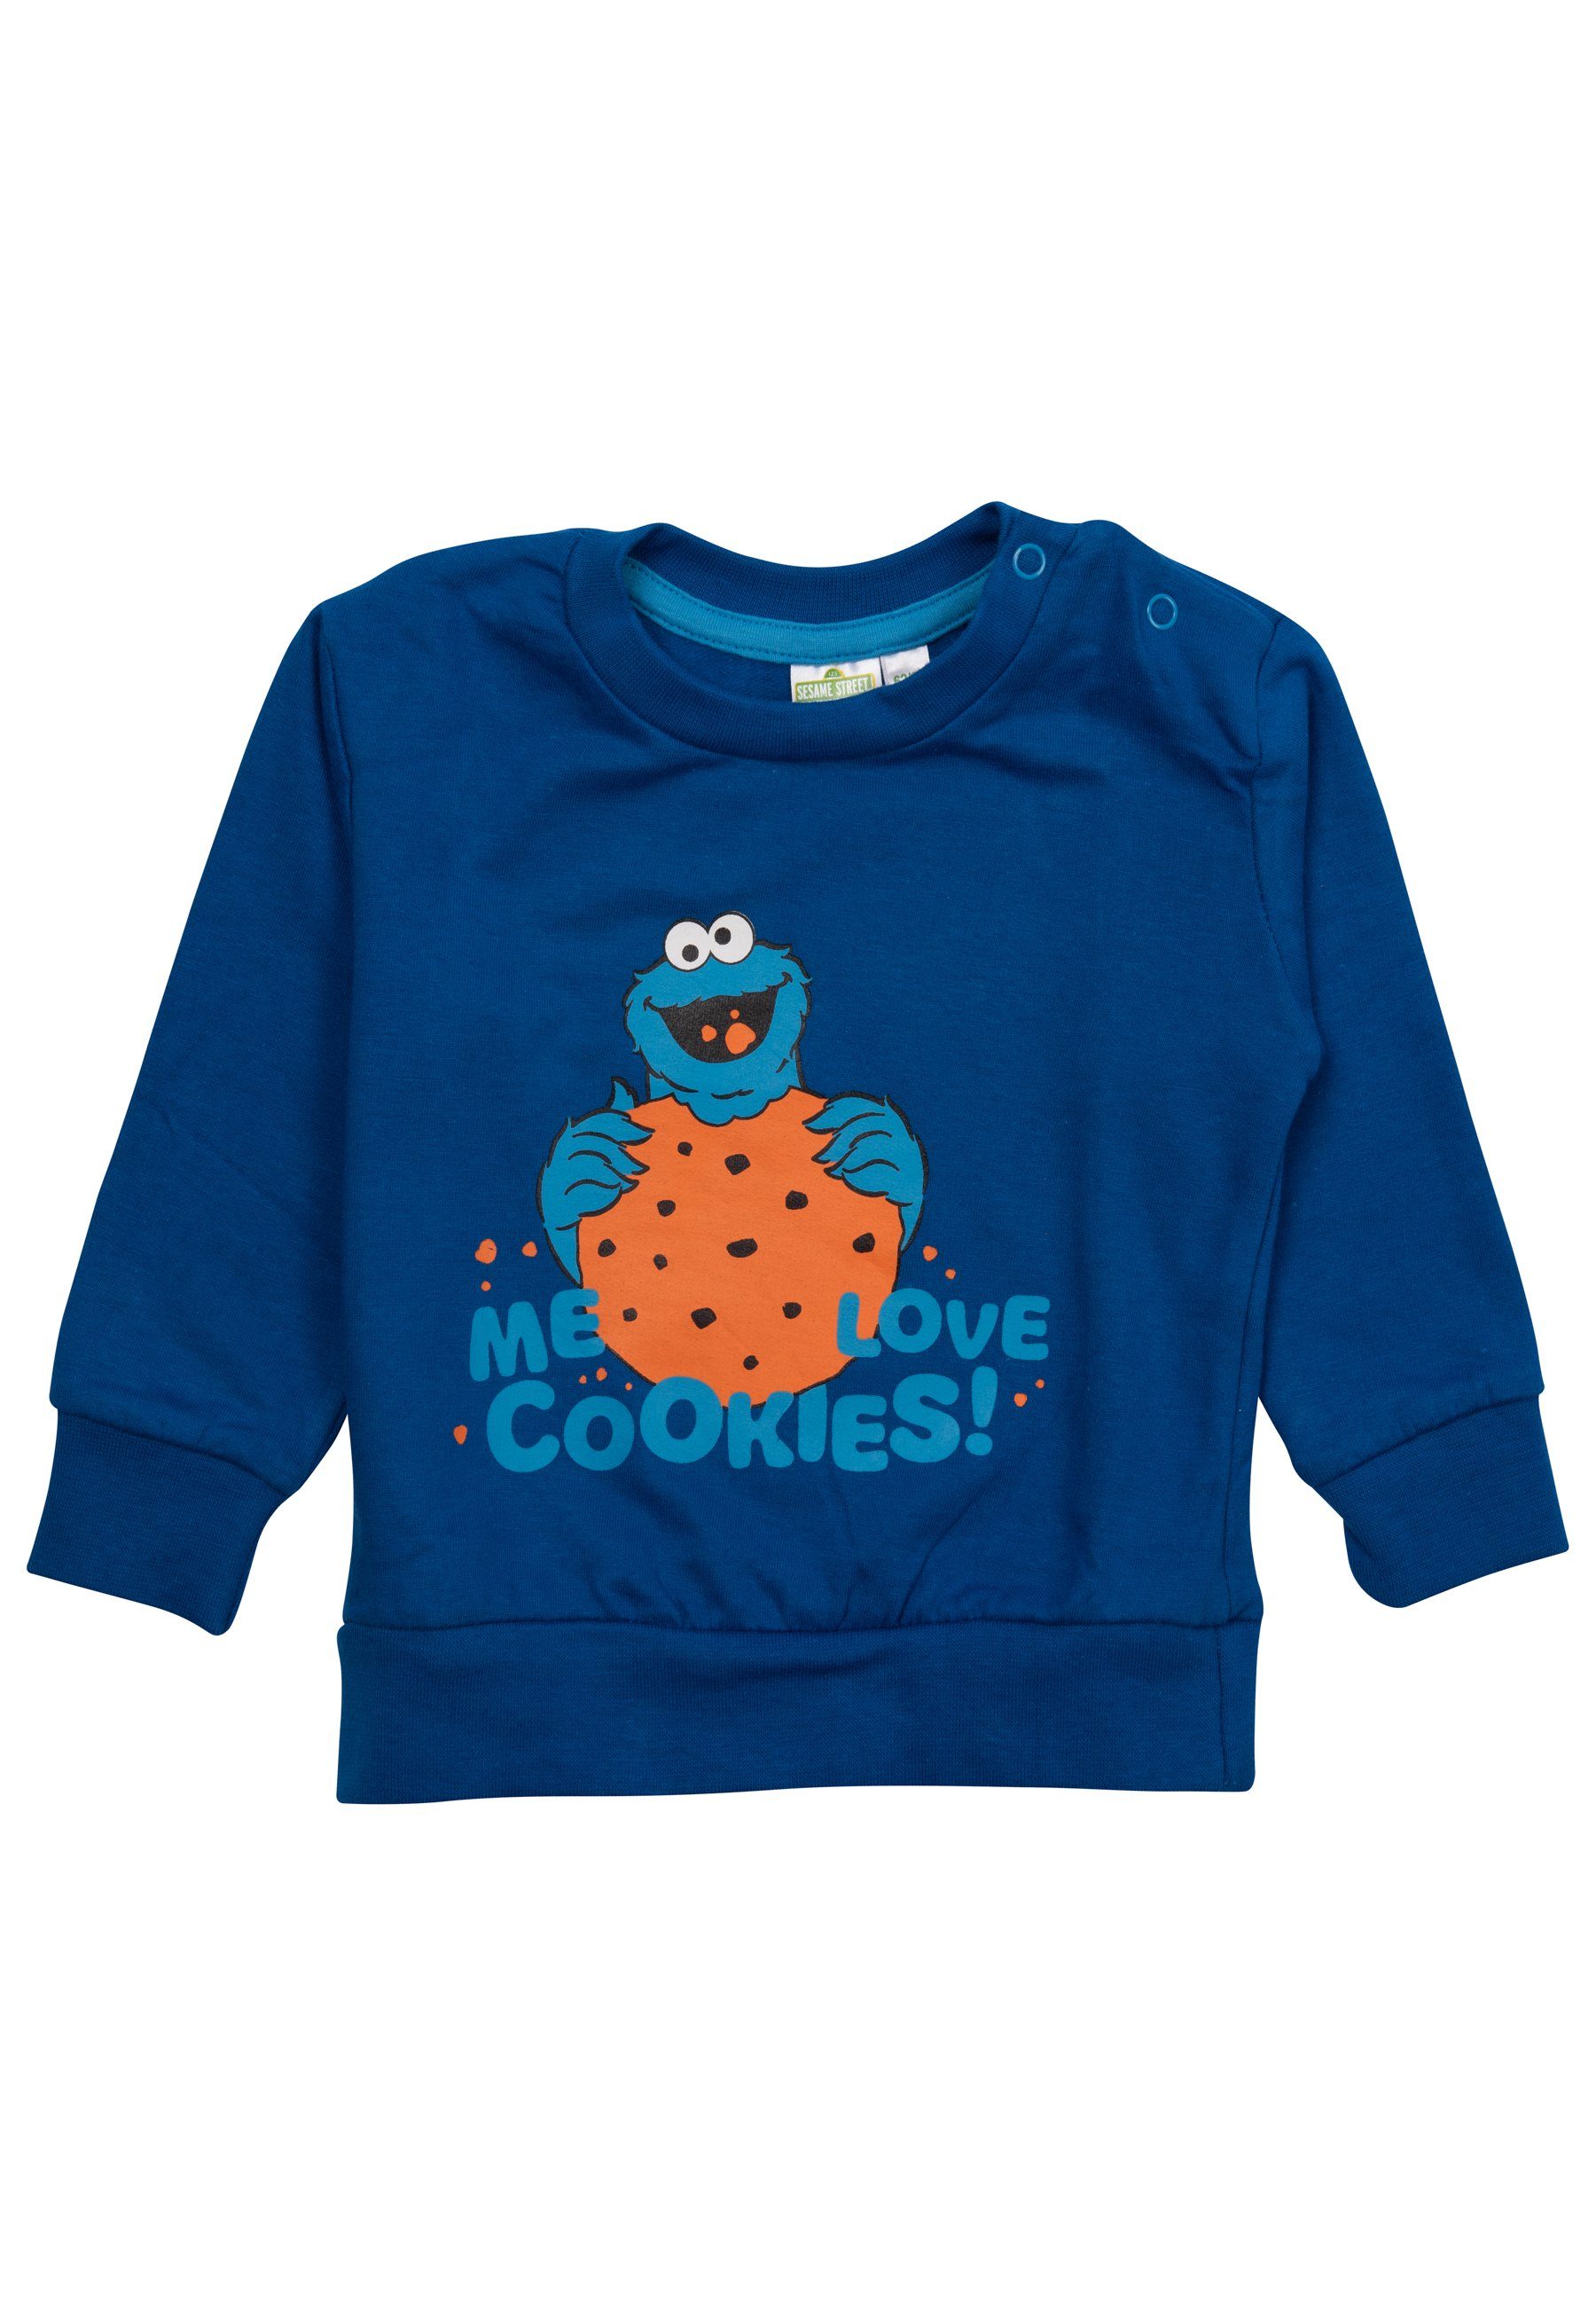 Baby United Pullover Hose Krümelmonster Sesamstraße - Labels® mit Grau Hose Set Blau Shirt &